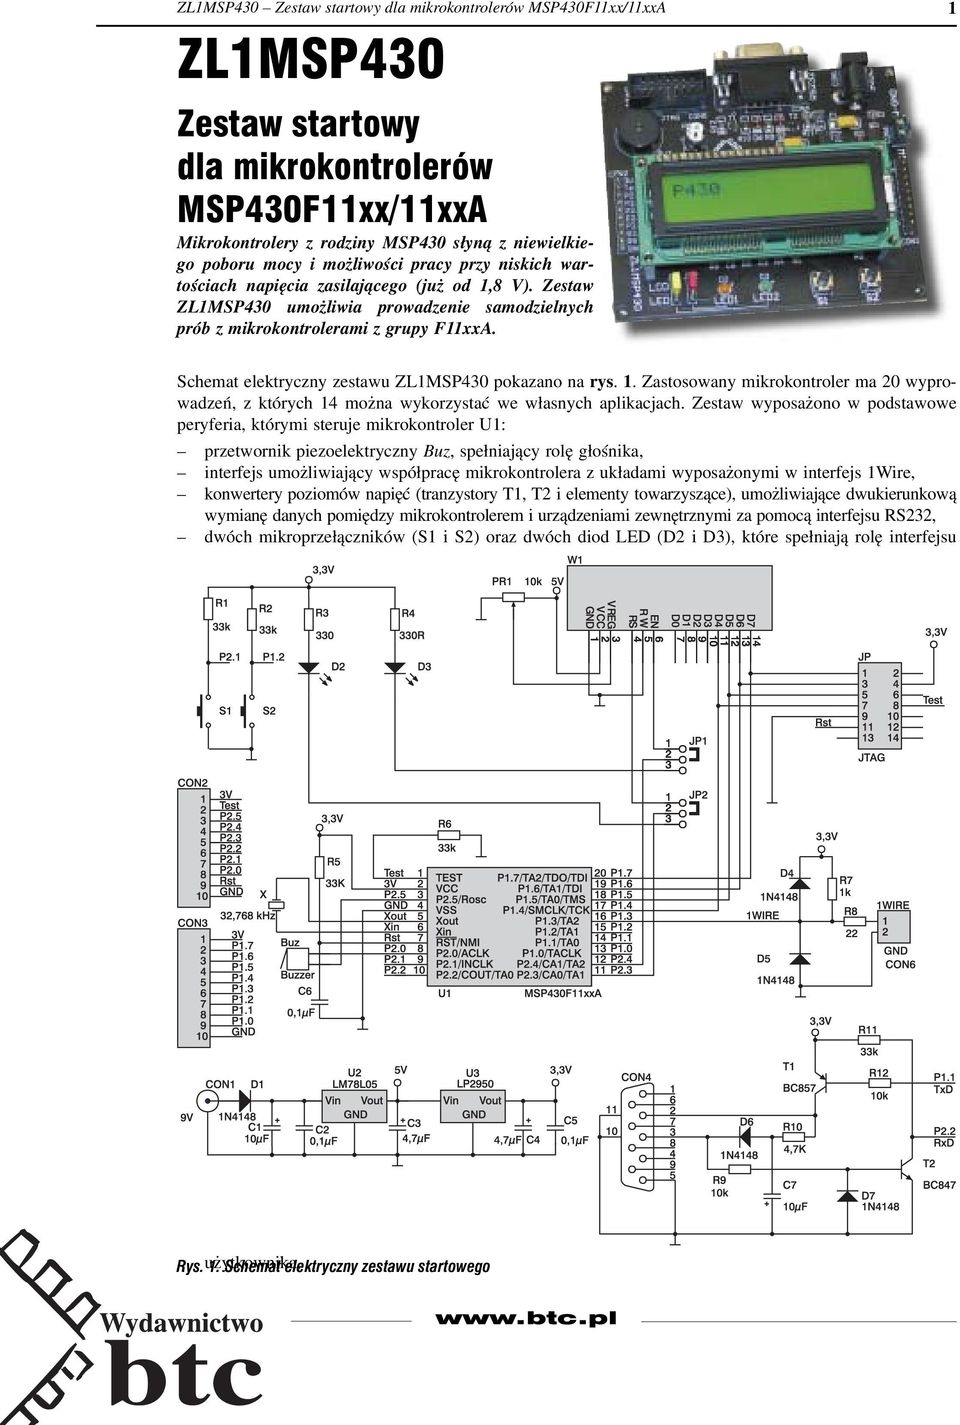 1 Schemat elektryczny zestawu ZL1MSP430 pokazano na rys. 1. Zastosowany mikrokontroler ma 20 wyprowadzeń, z których 14 można wykorzystać we własnych aplikacjach.